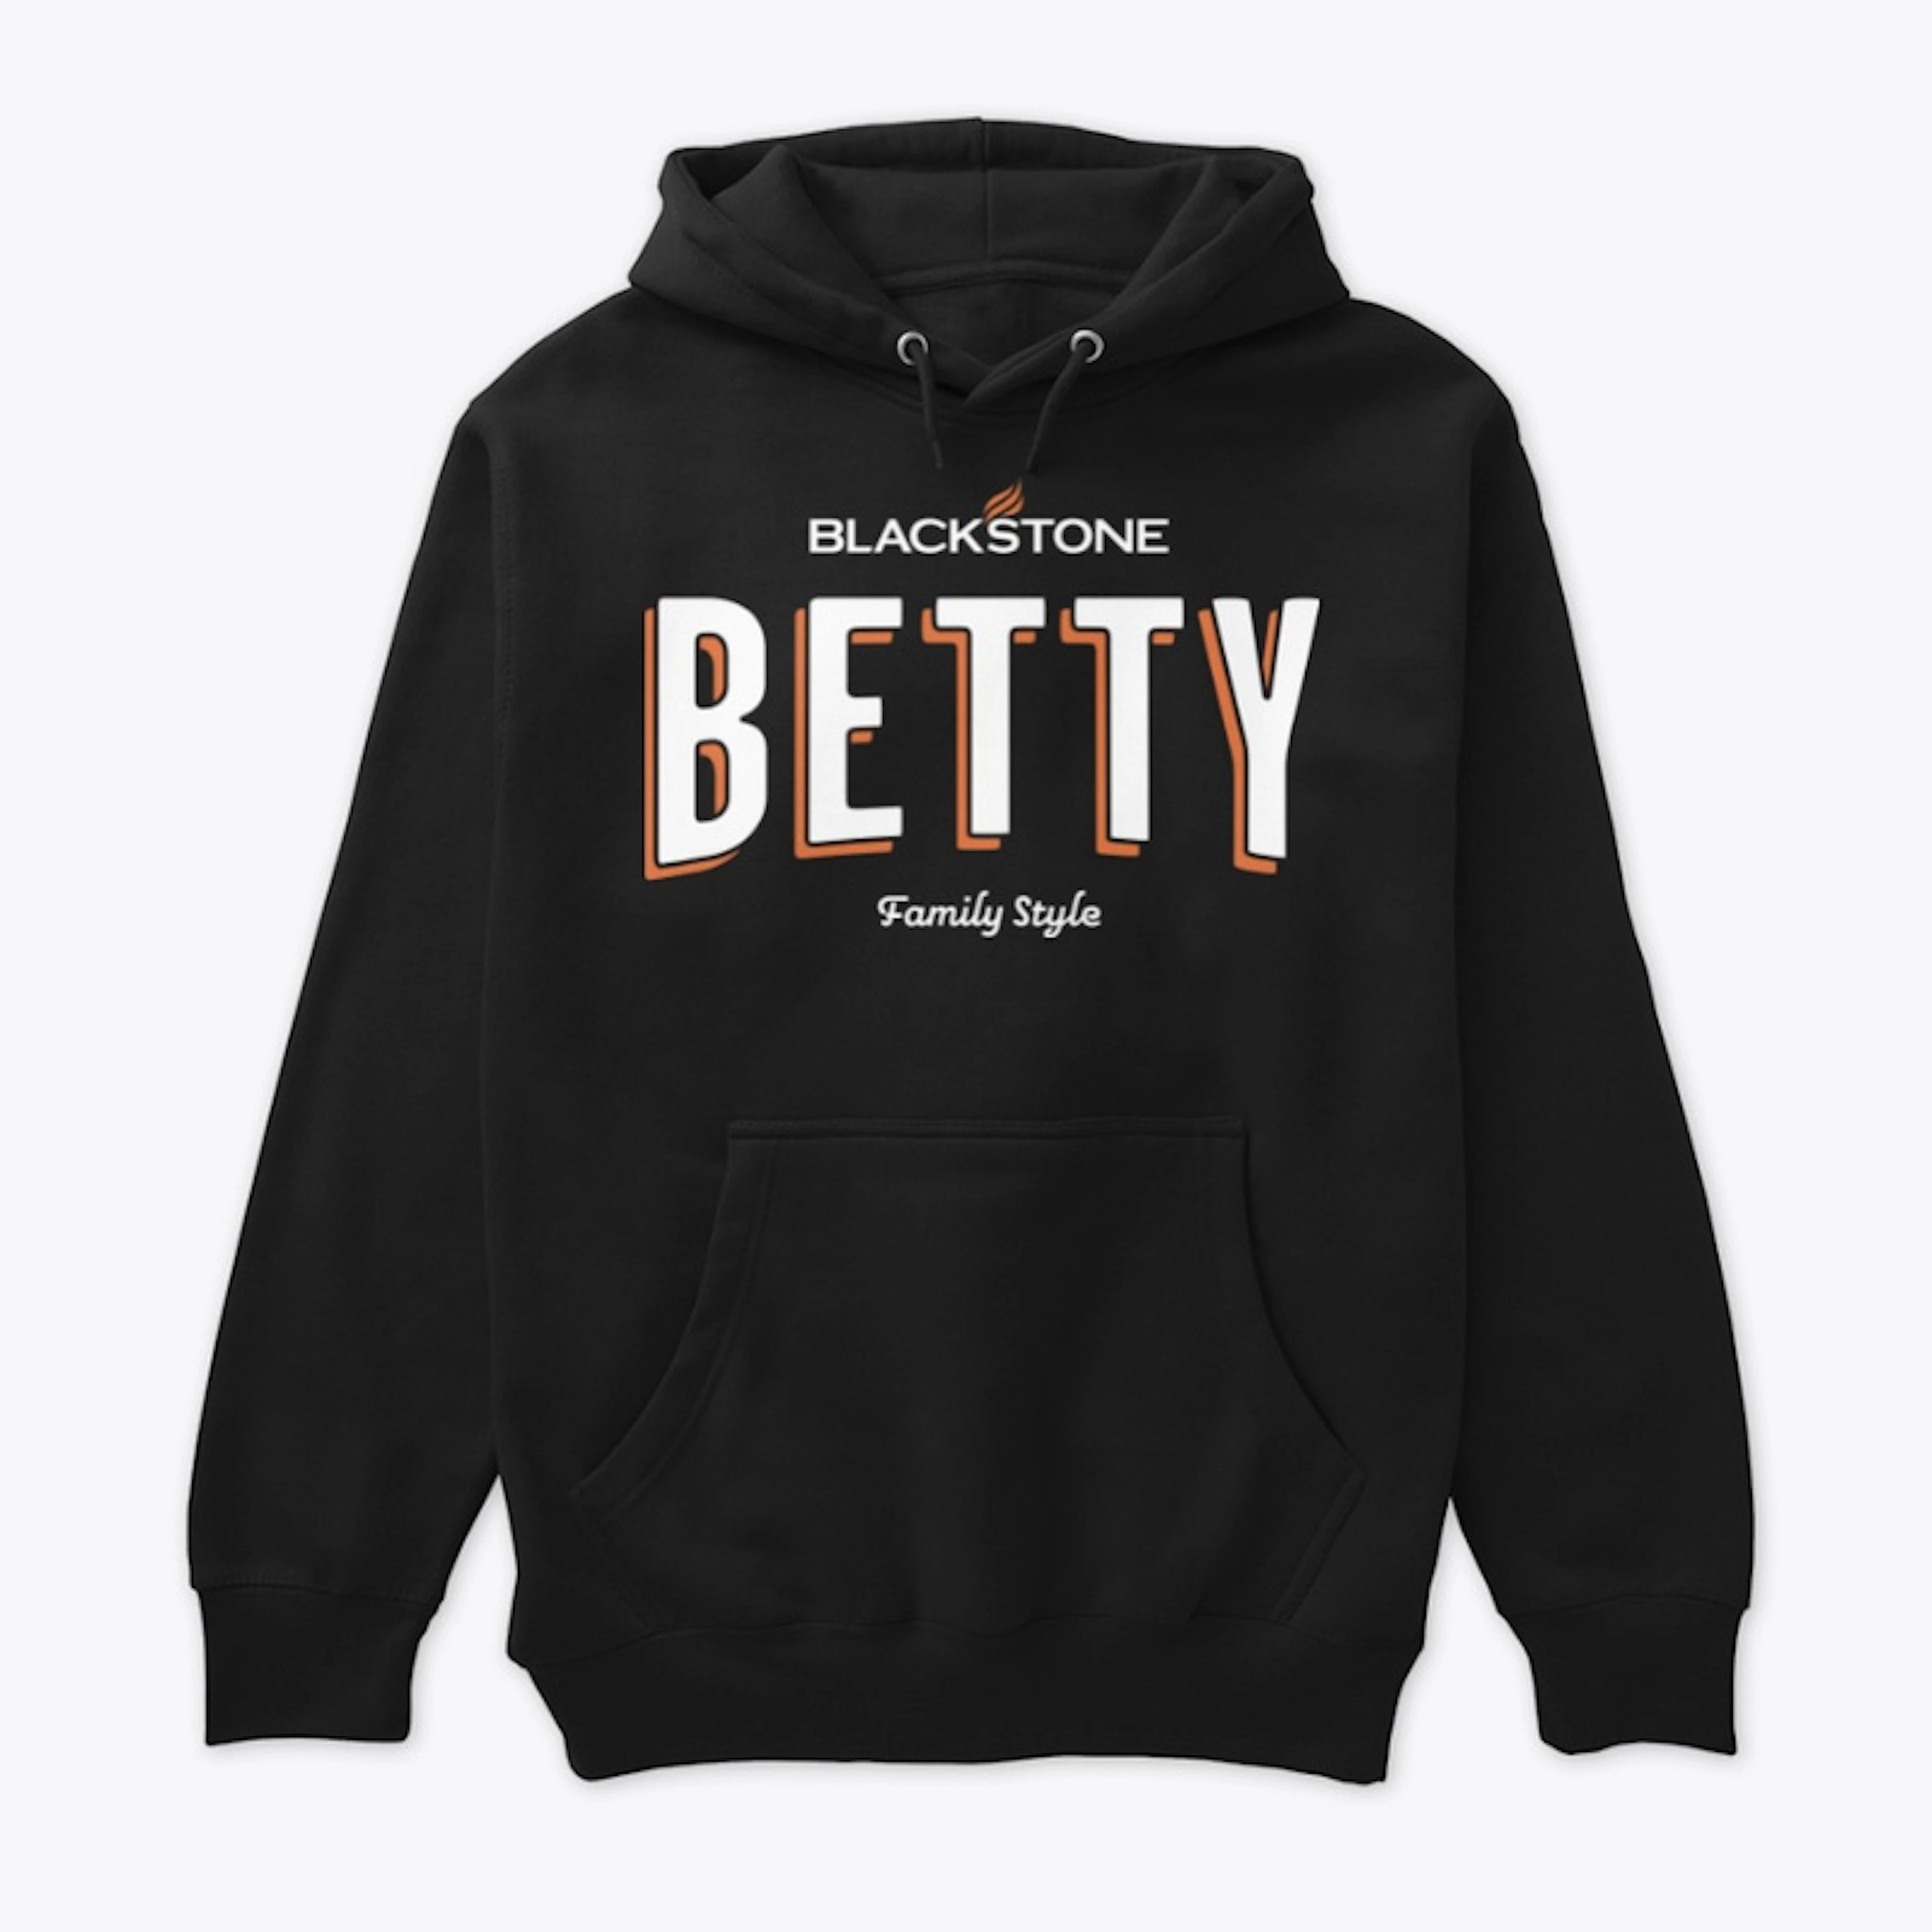 Blackstone Betty - Family Style